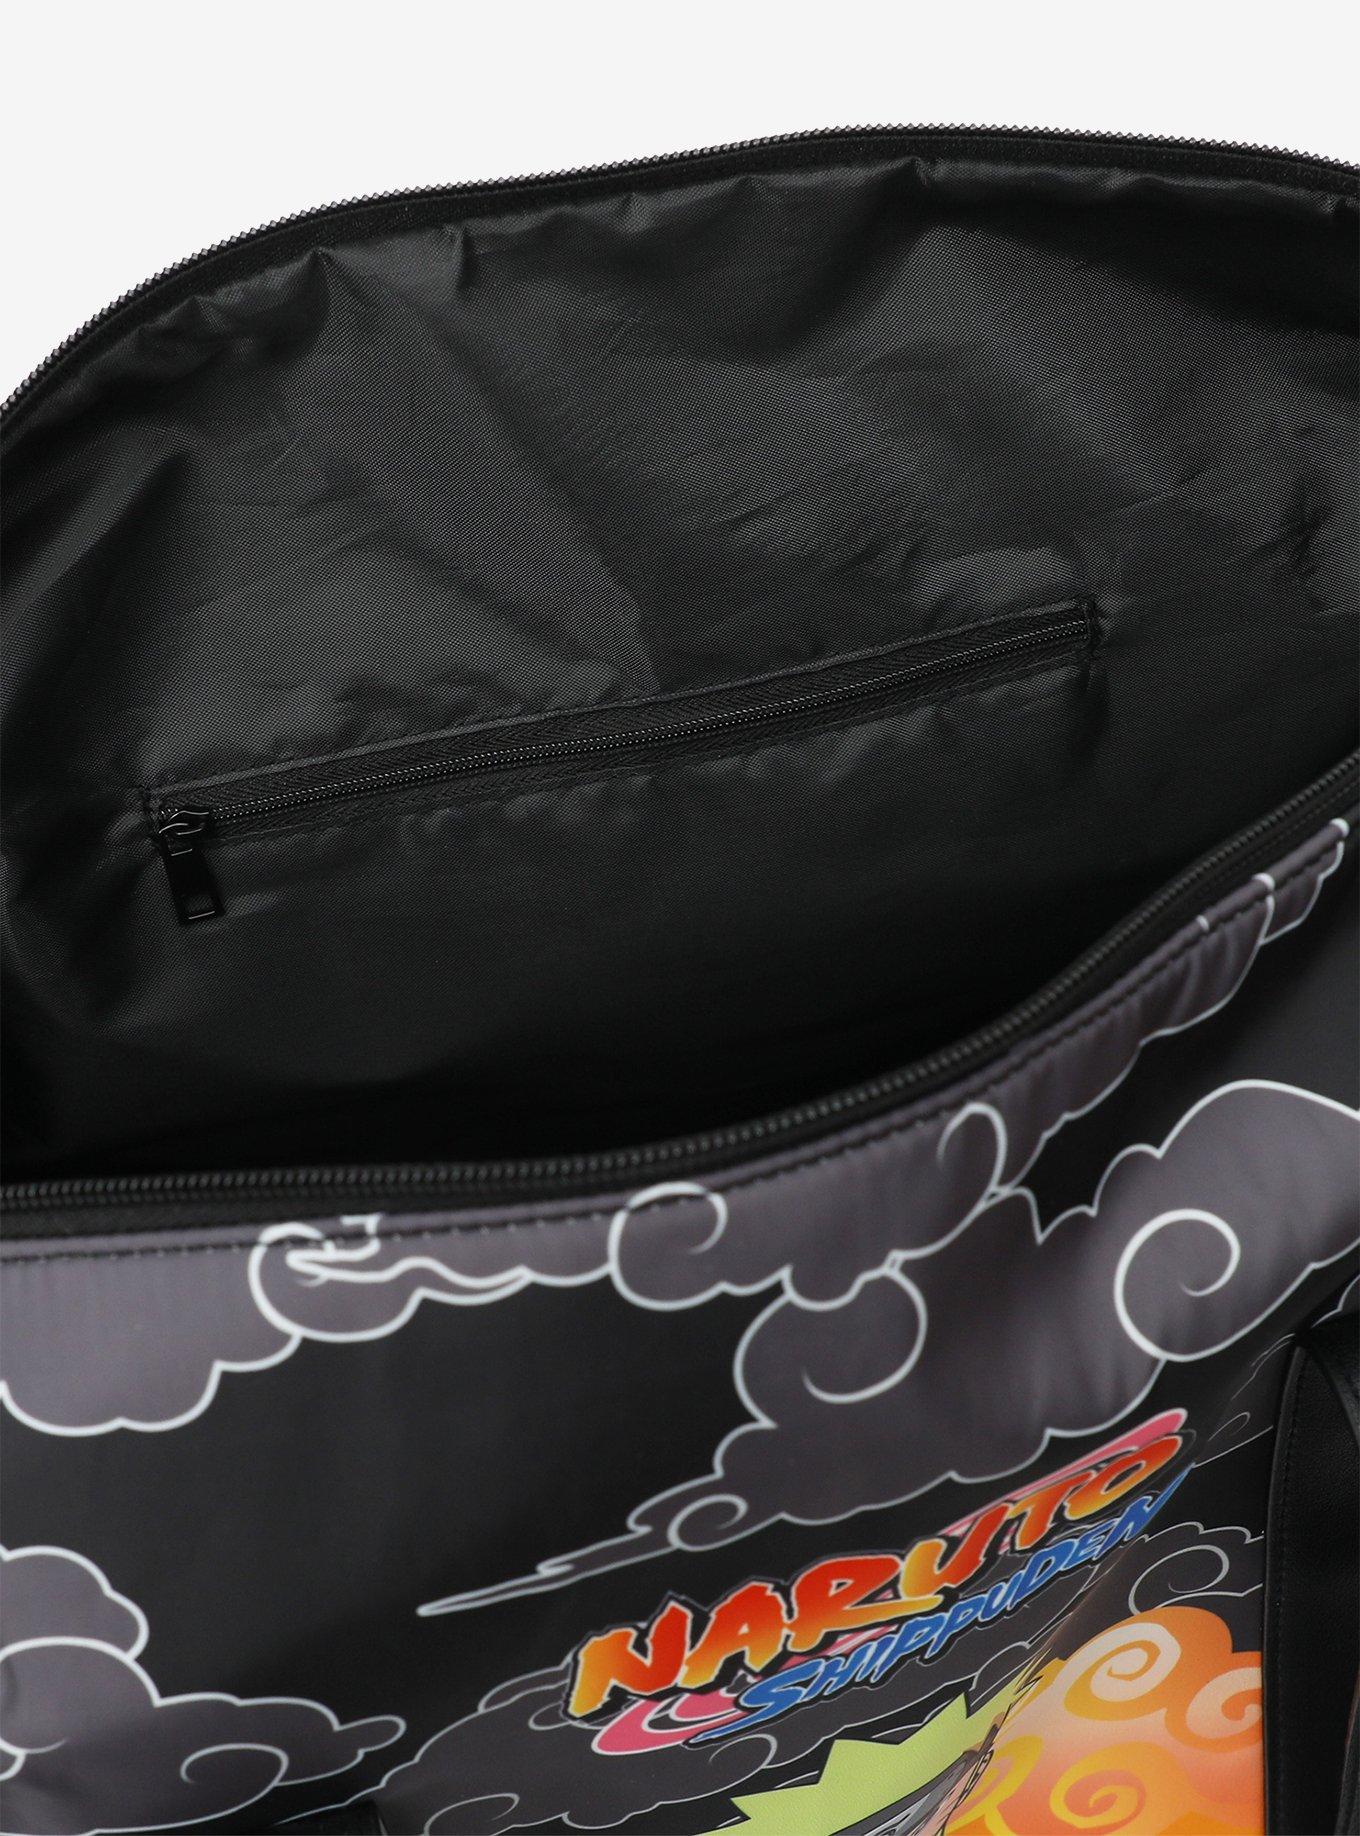 Naruto Shippuden Clouds Rolling Duffle Bag